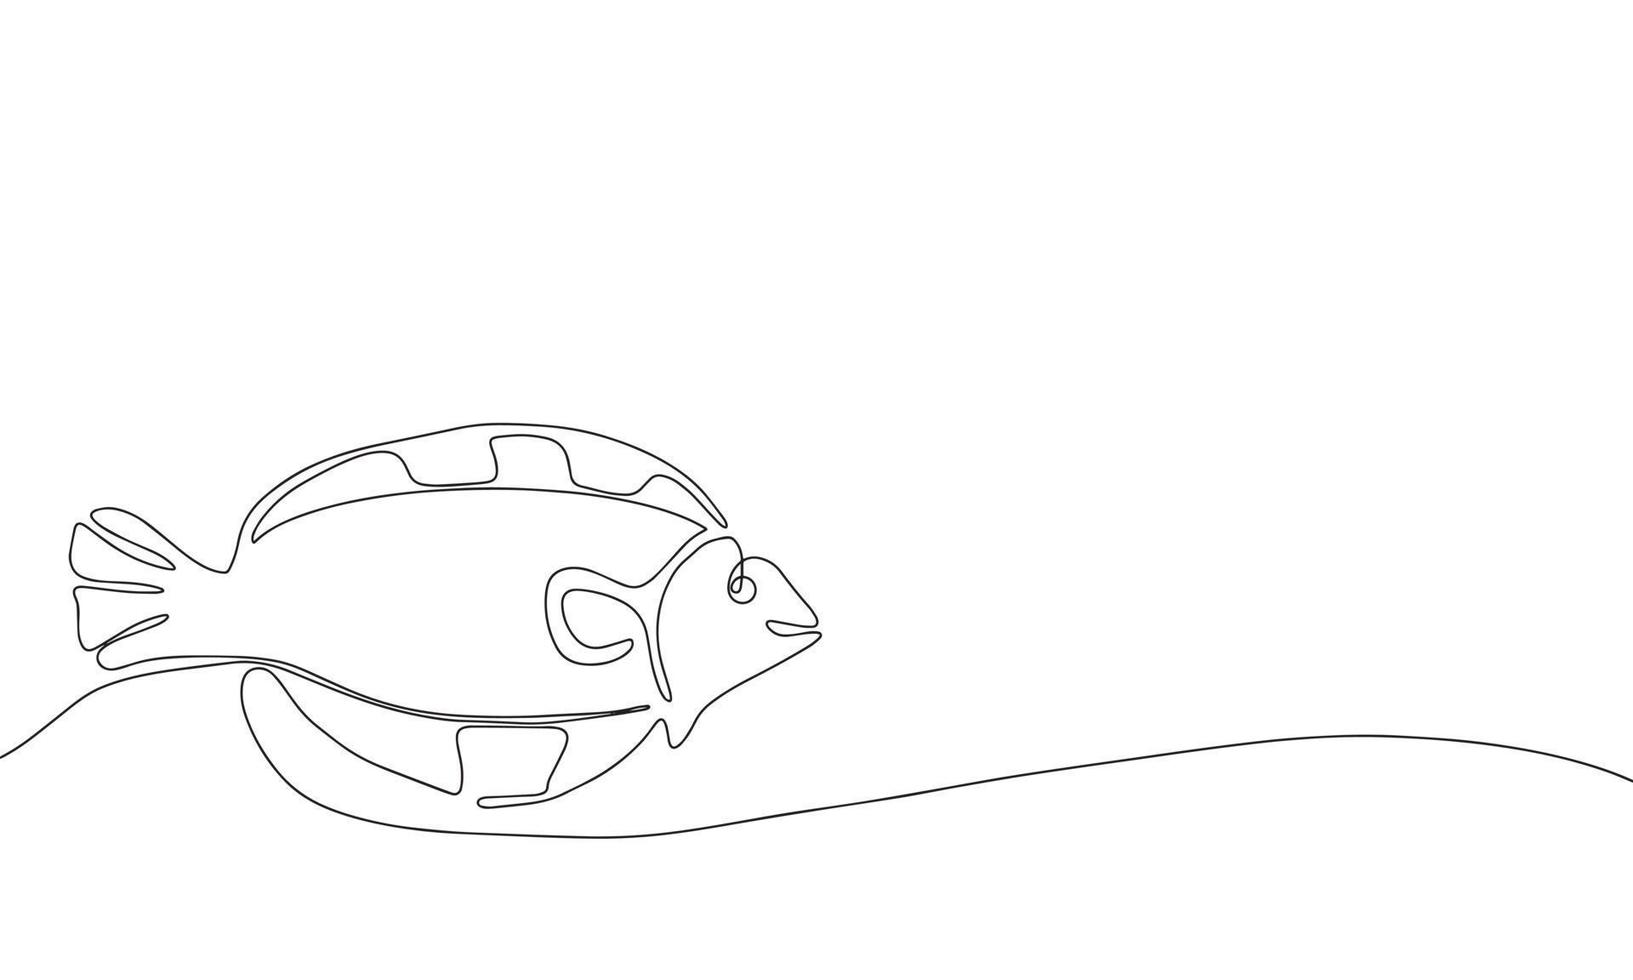 peixe abstrato em estilo de desenho de arte de linha contínua. desenho linear preto minimalista sobre fundo branco. ilustração vetorial vetor